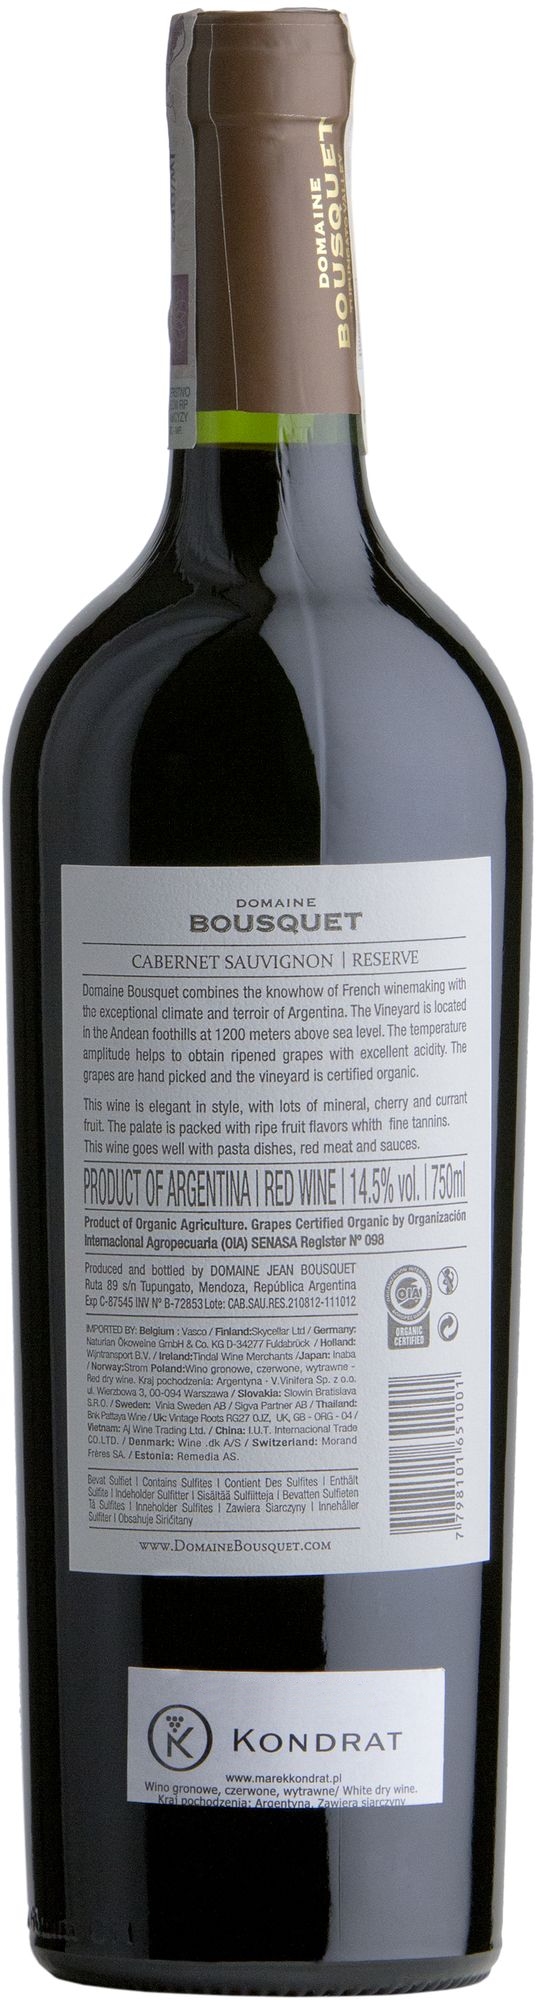 Wino Domaine Bousquet Cabernet Sauvignon Reserva